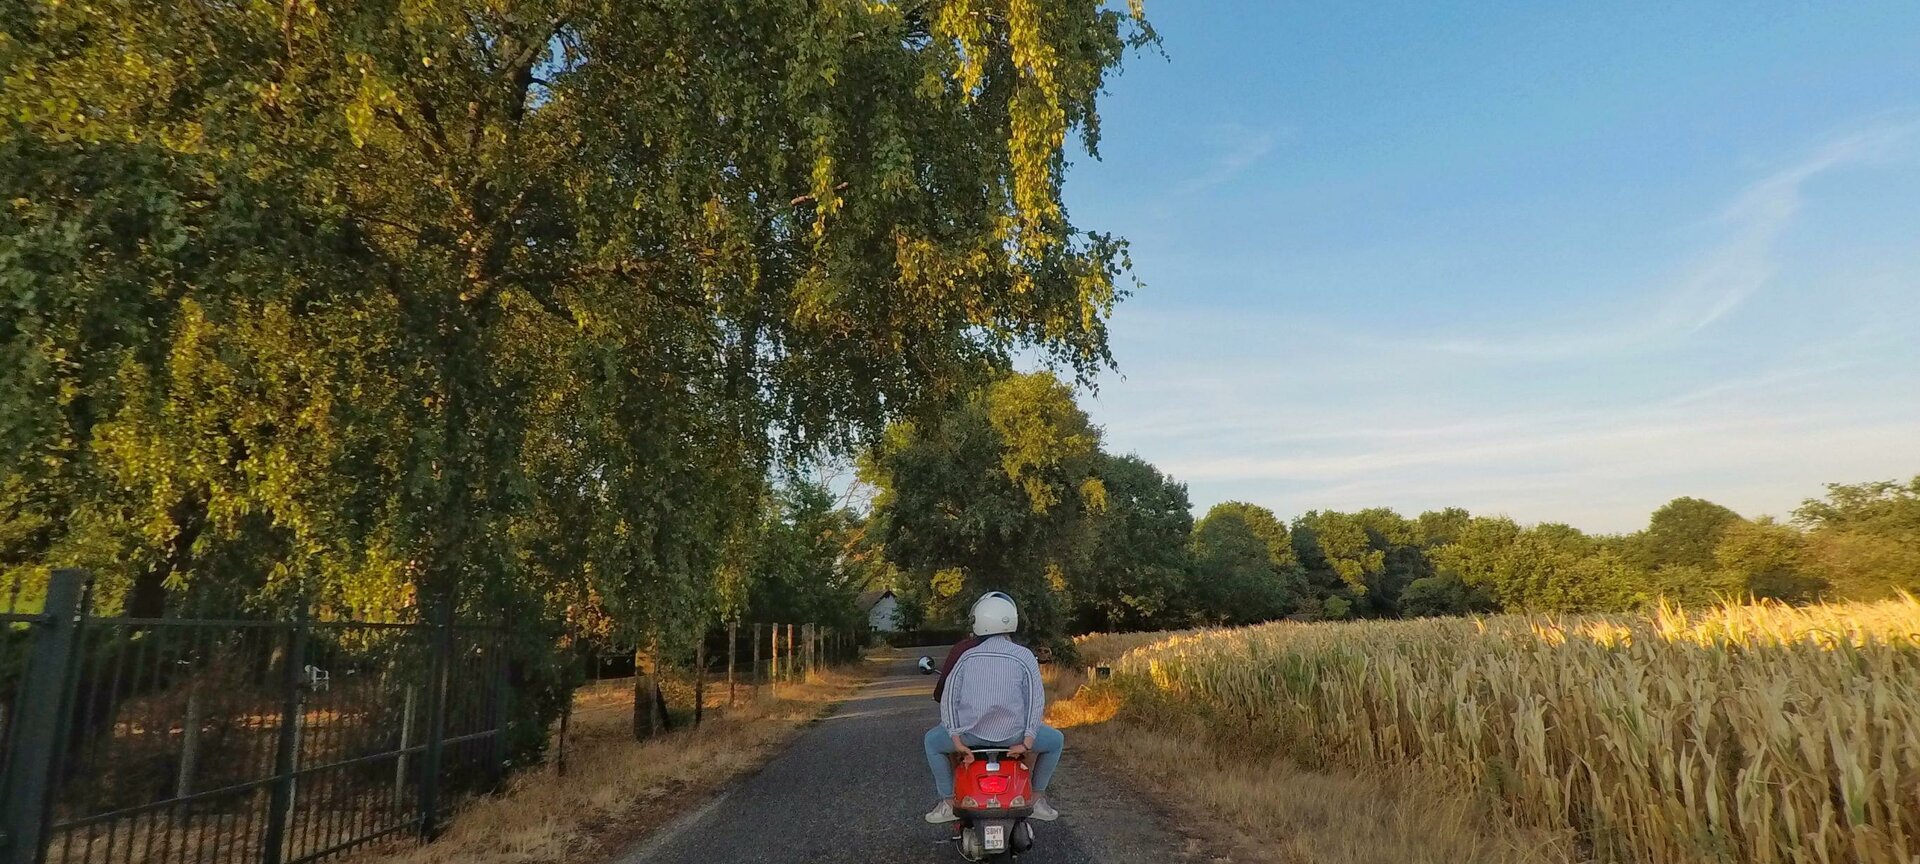 Vespa Maaseik - Verhuur van Vespa's en (elektrische) fietsen - Op weg door de grensoverschrijdende Maaslandse natuur.